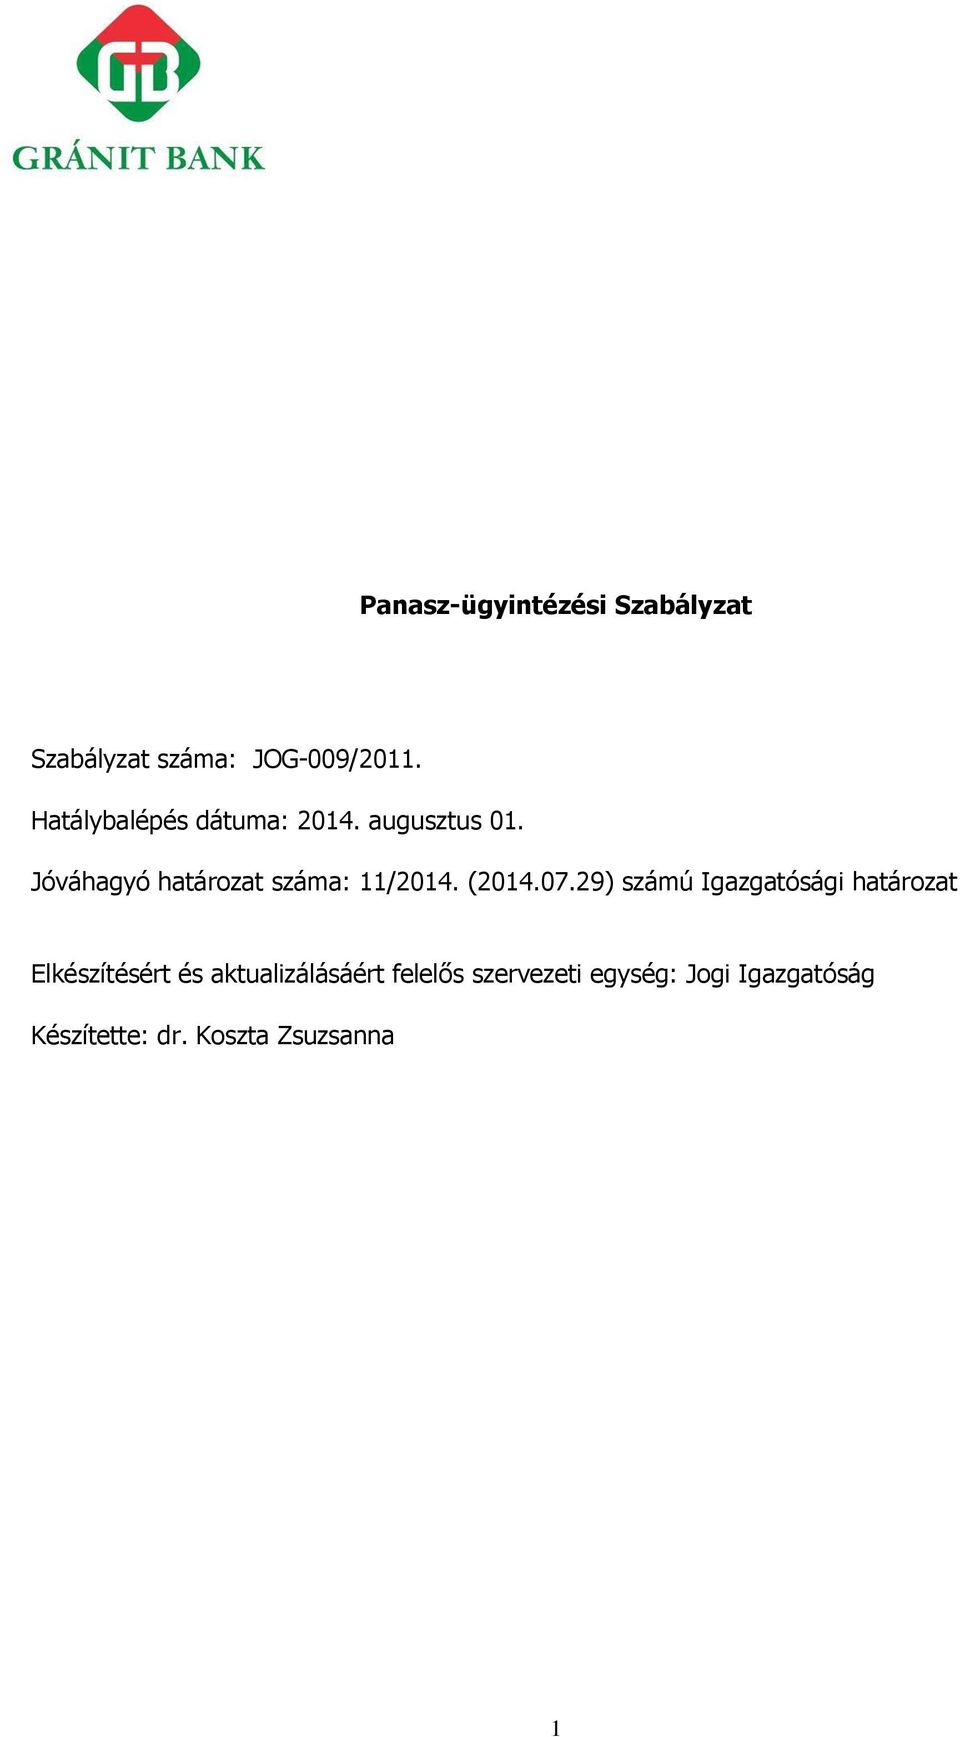 Jóváhagyó határozat száma: 11/2014. (2014.07.